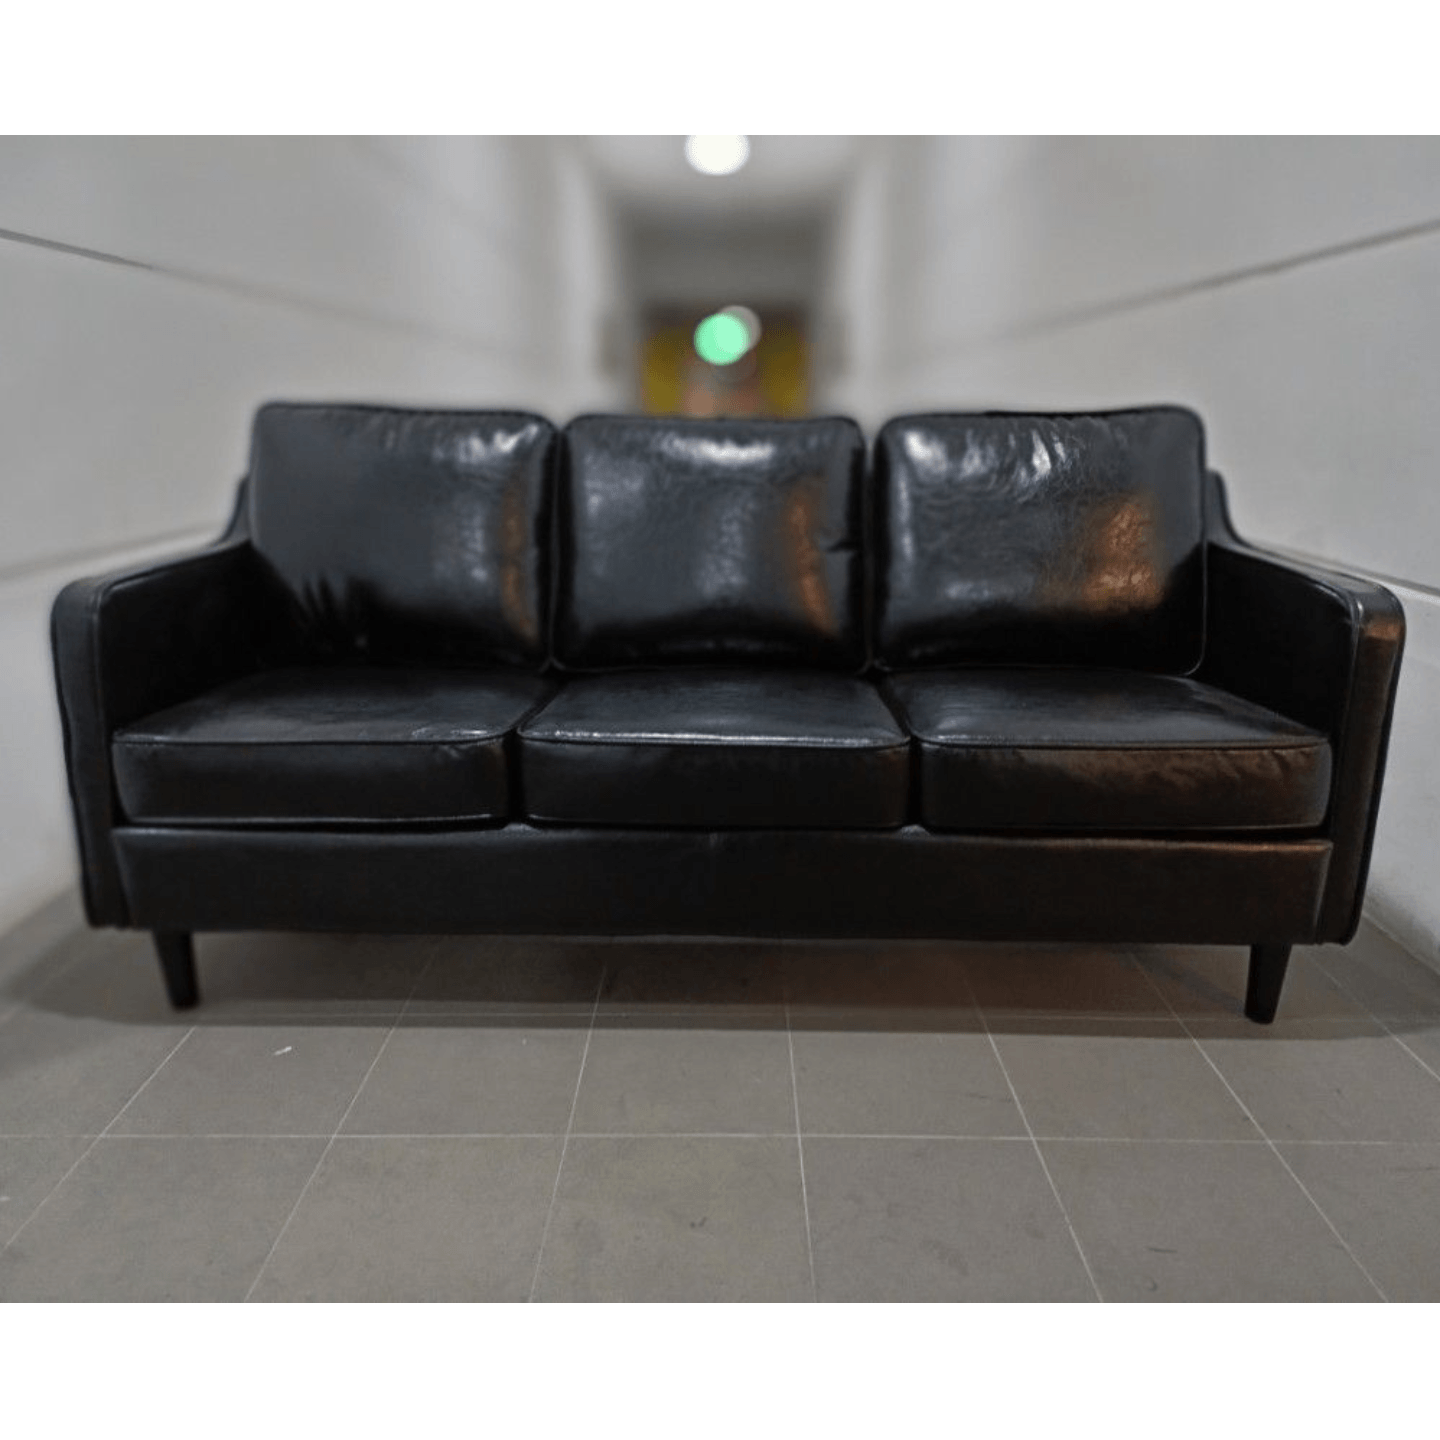 VALENTE DESIGNS 3 Seater Sofa in PITCH BLACK PU